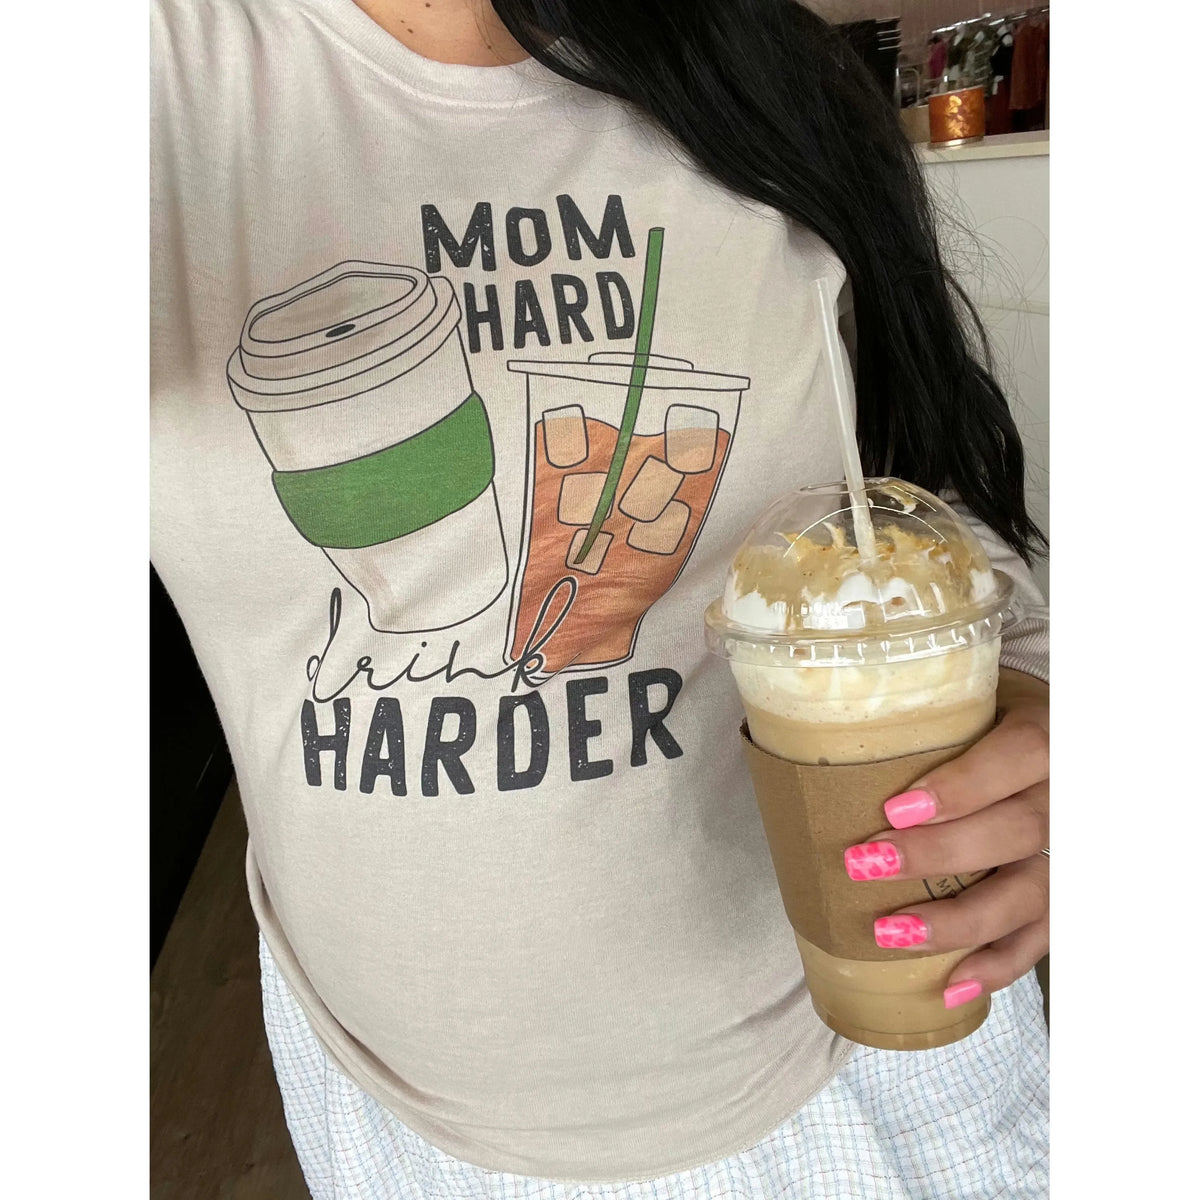 Mom Hard drink harder coffee tee or sweatshirt